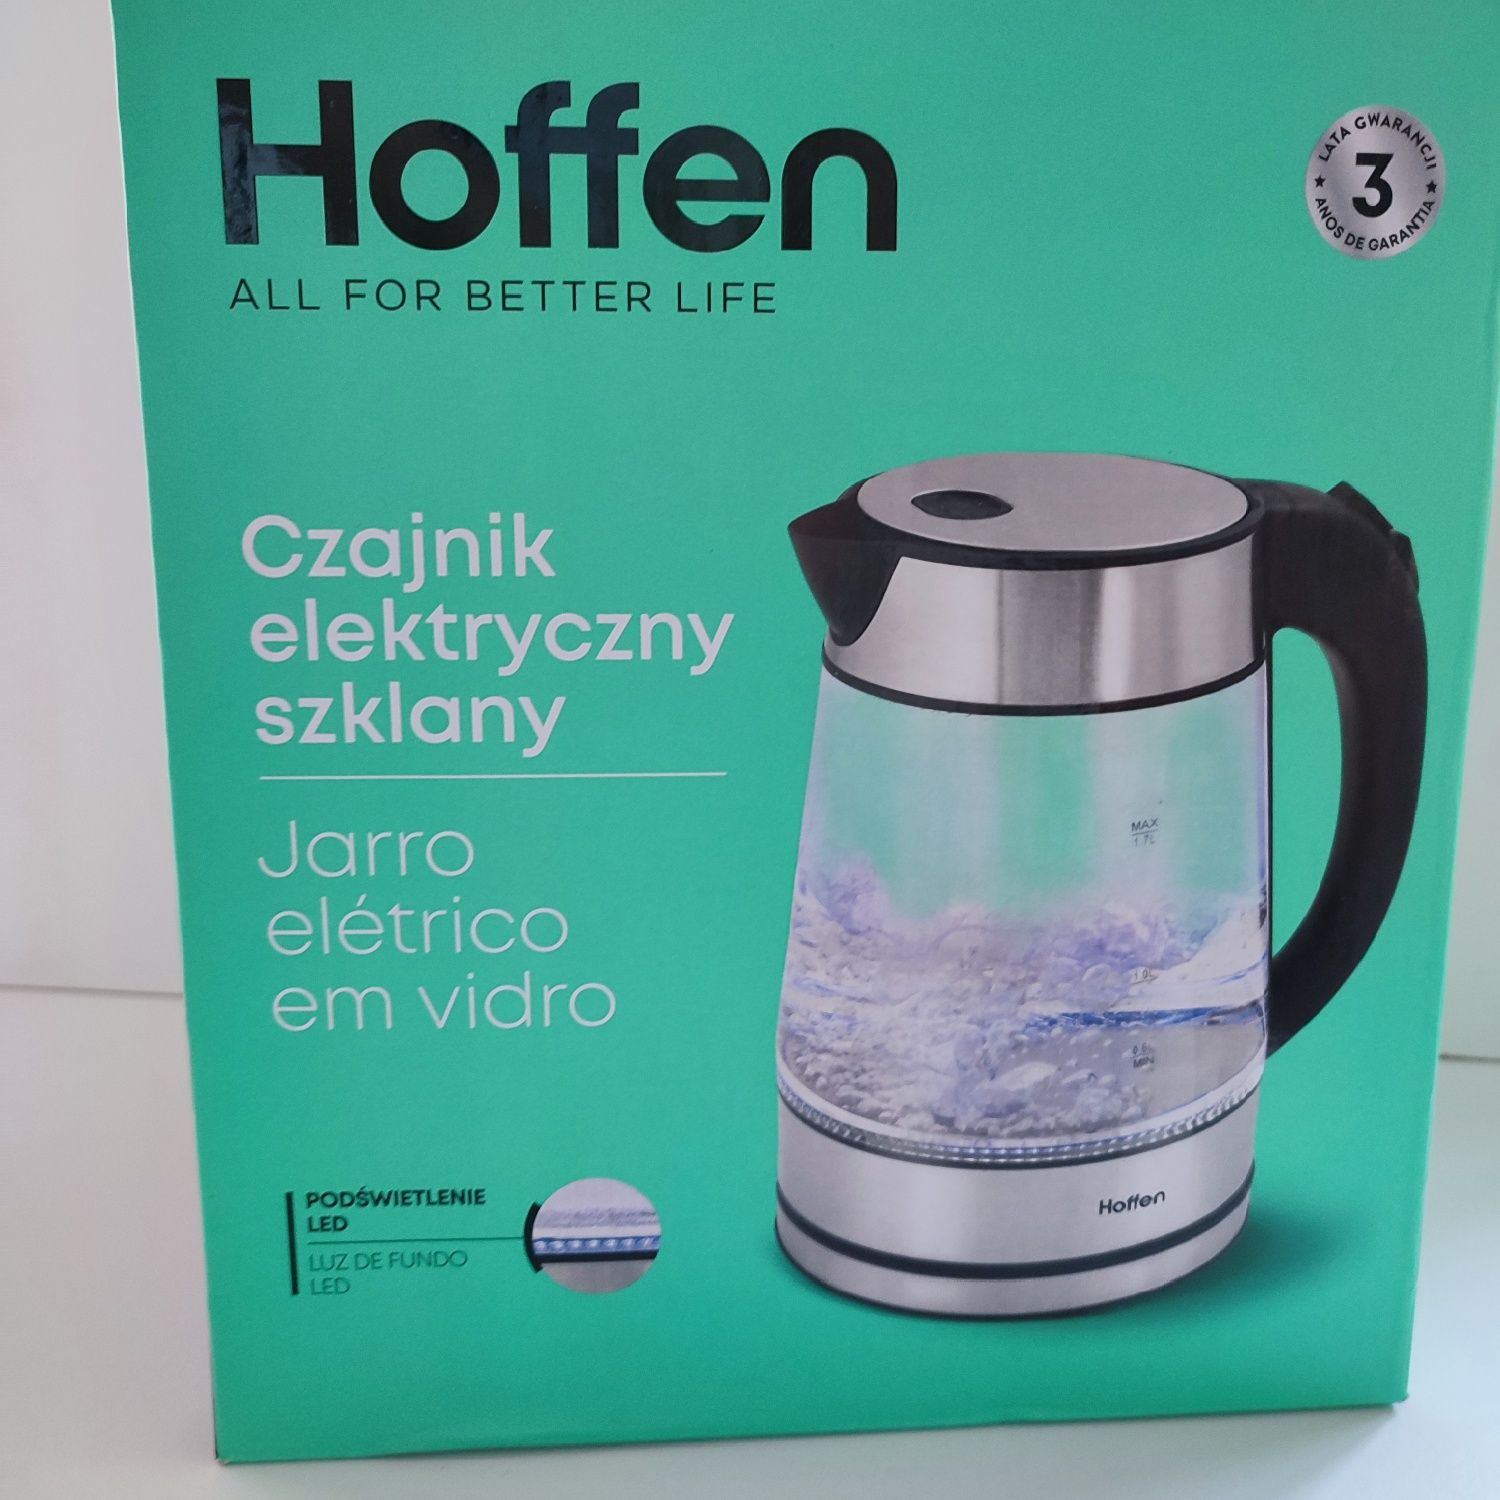 Czajnik elektryczny szklany Hoffen 2200W gwarancja